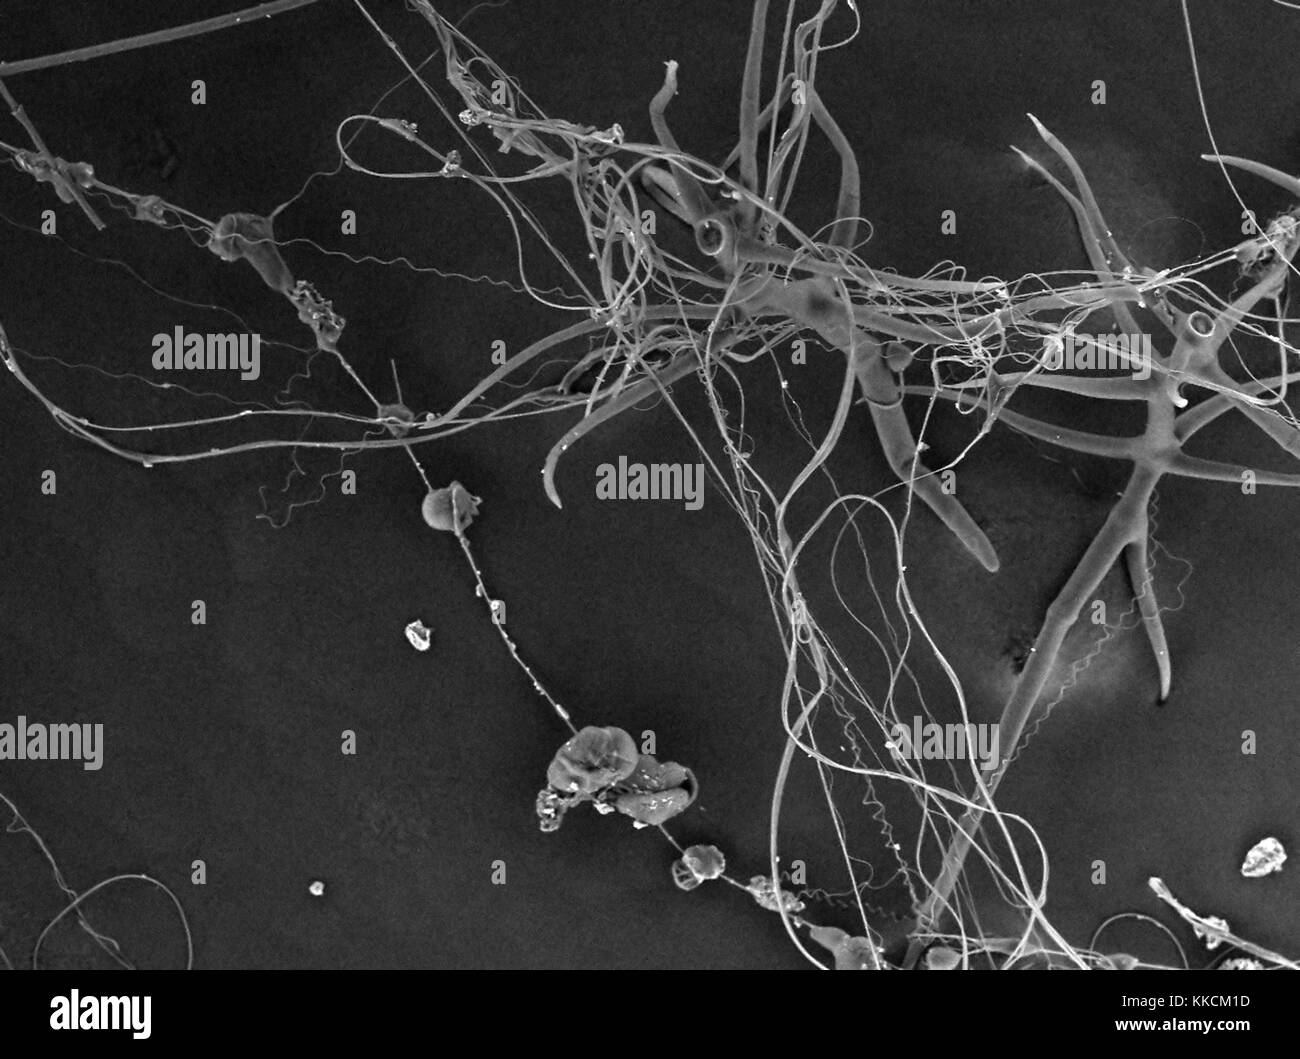 Rasterelektronenmikroskop (REM) Aufnahme, die Spinnenseide, einschließlich Gewinde, hydrogel und nano-fibrille Seide Arten, bei einer Vergrößerung von 250 x, 2016. Stockfoto